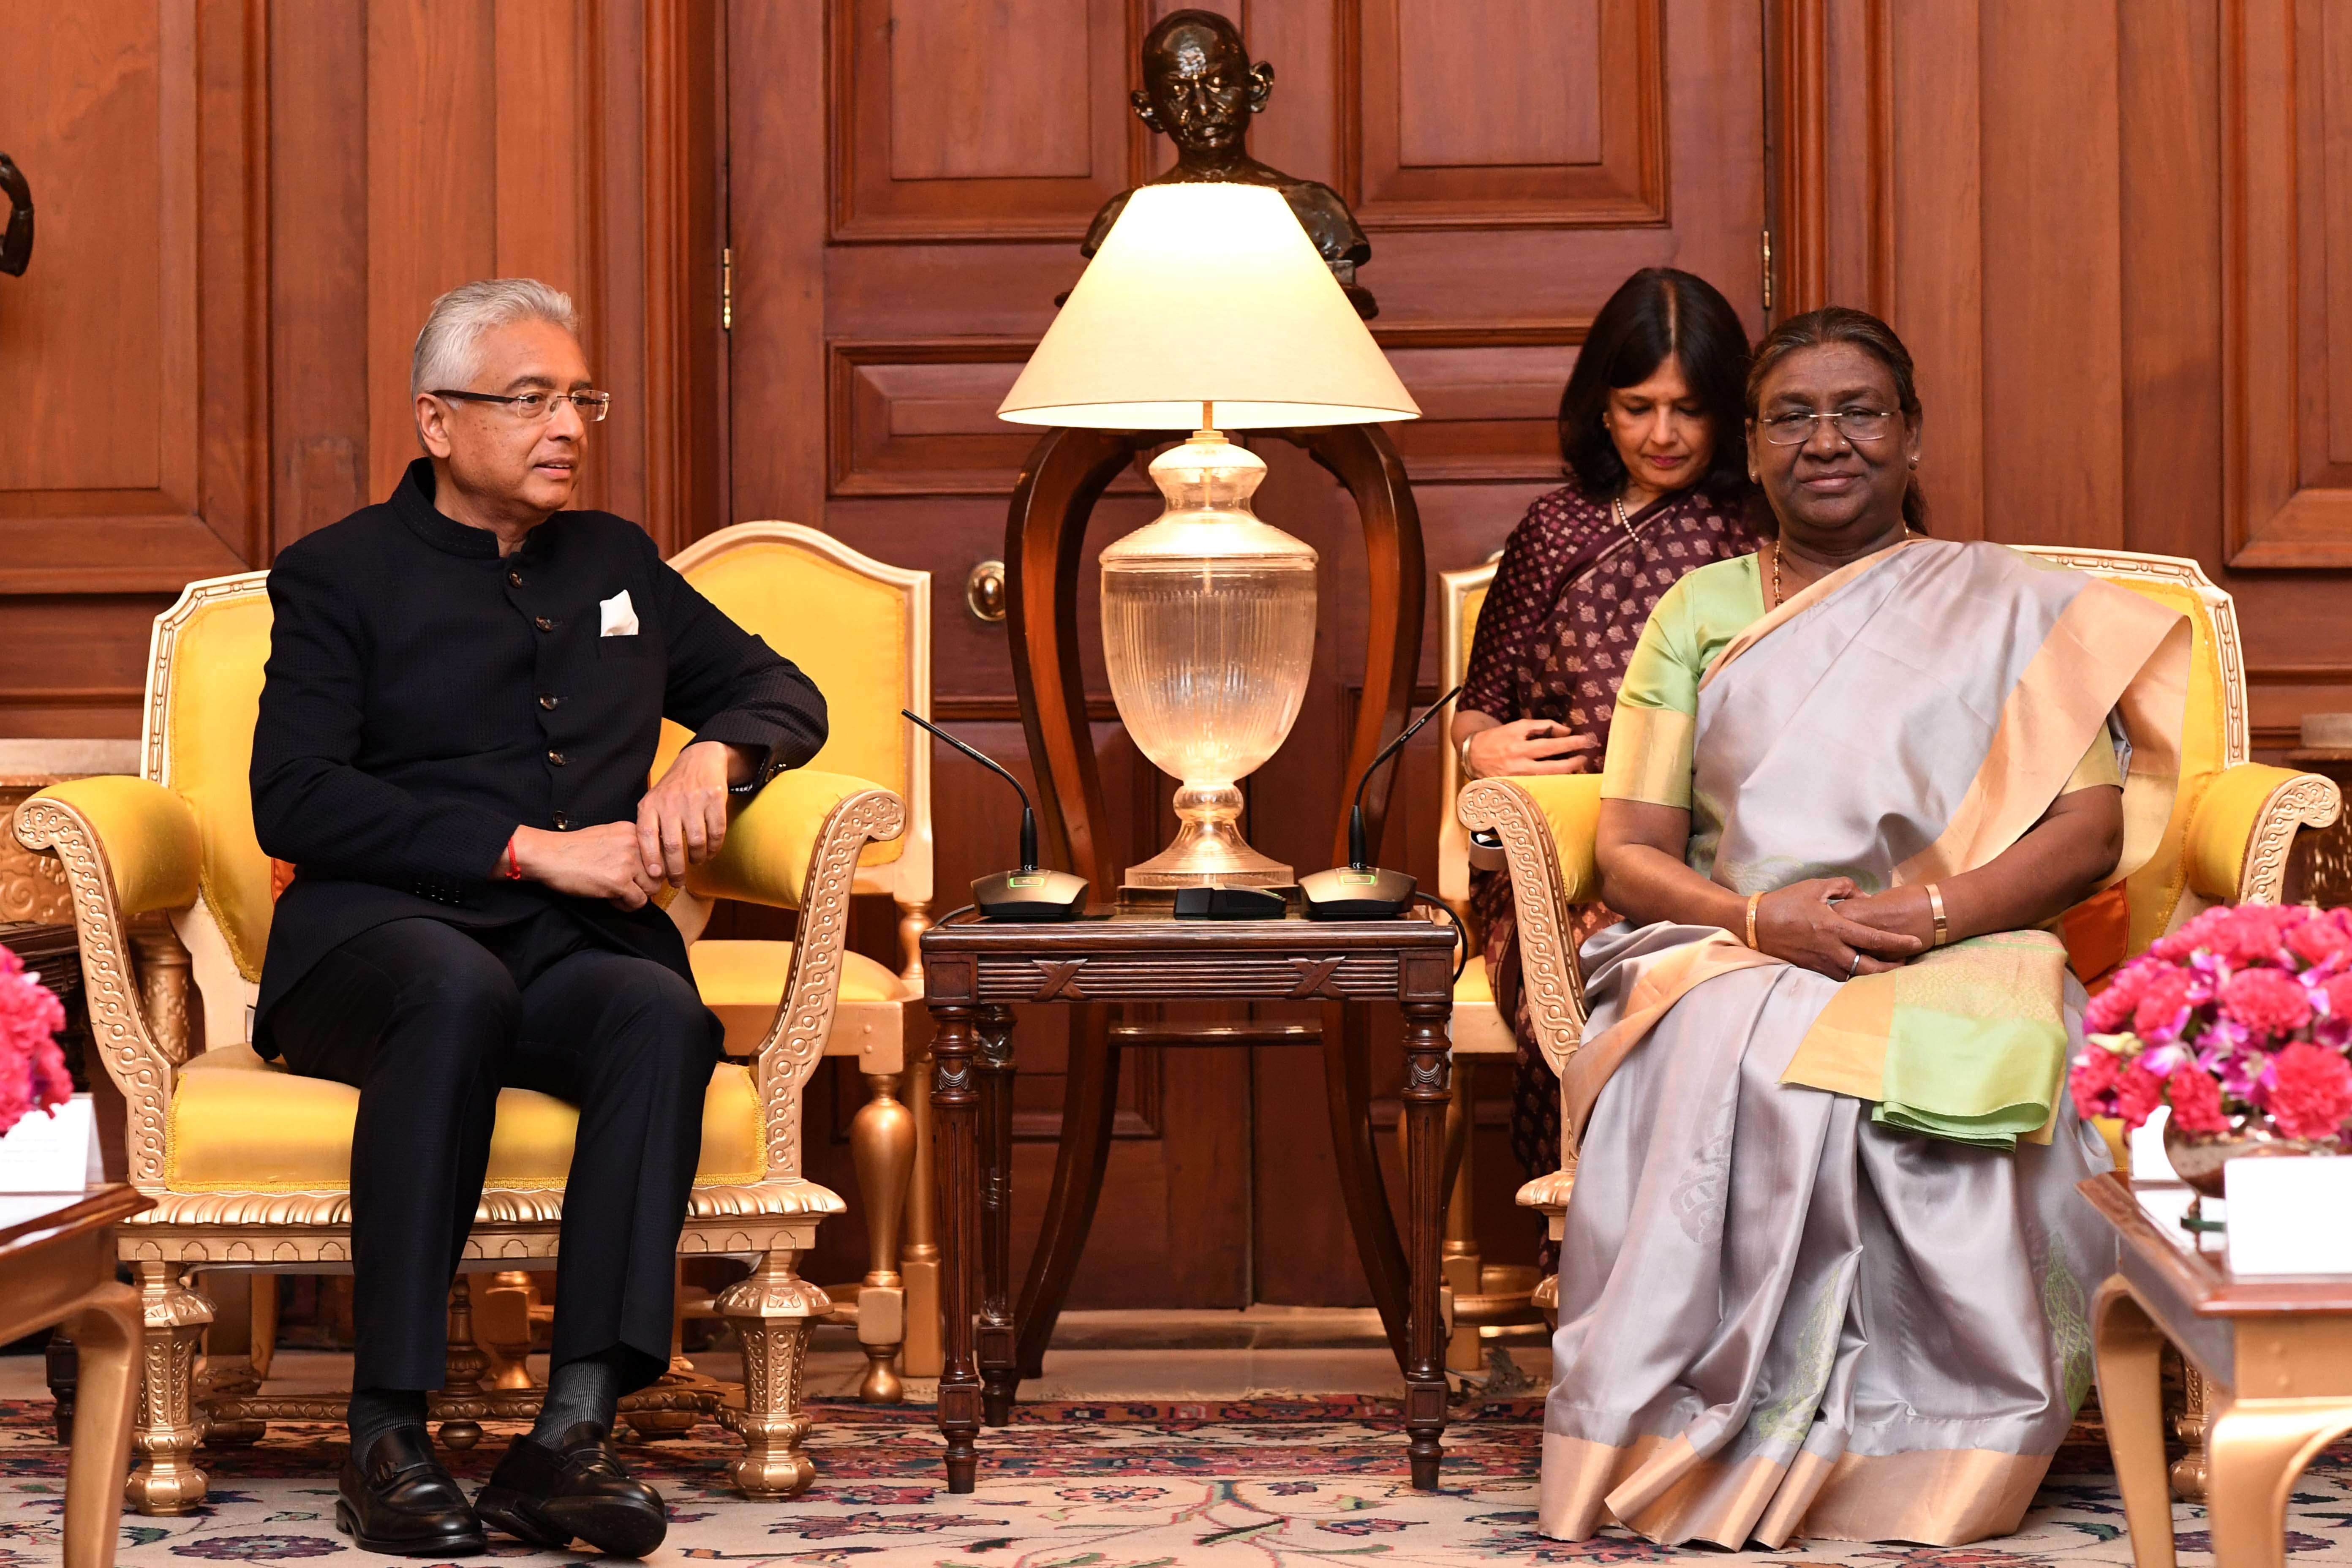 मॉरीशस गणराज्य के प्रधानमंत्री प्रविंद कुमार जगन्नाथ ने आज राष्ट्रपति भवन में भारत की राष्ट्रपति श्रीमती द्रौपदी मुर्मू से मुलाकात की।